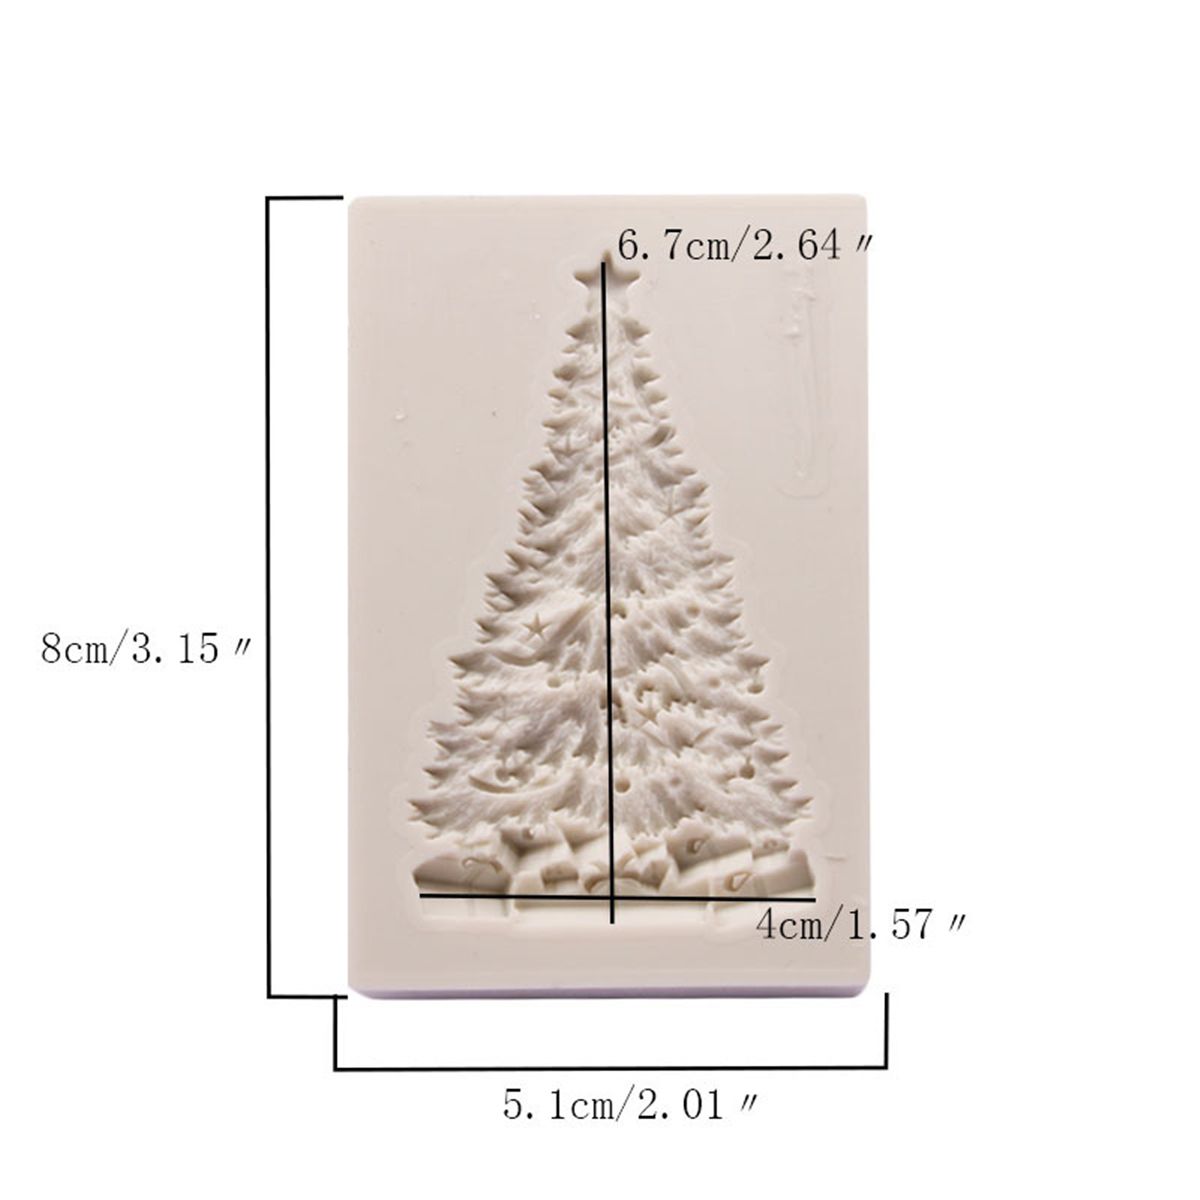 Christmas-Tree-Silicone-Baking-Mold-Cake-Fondant-Chocolate-Mould-Decor-Craft-1458426